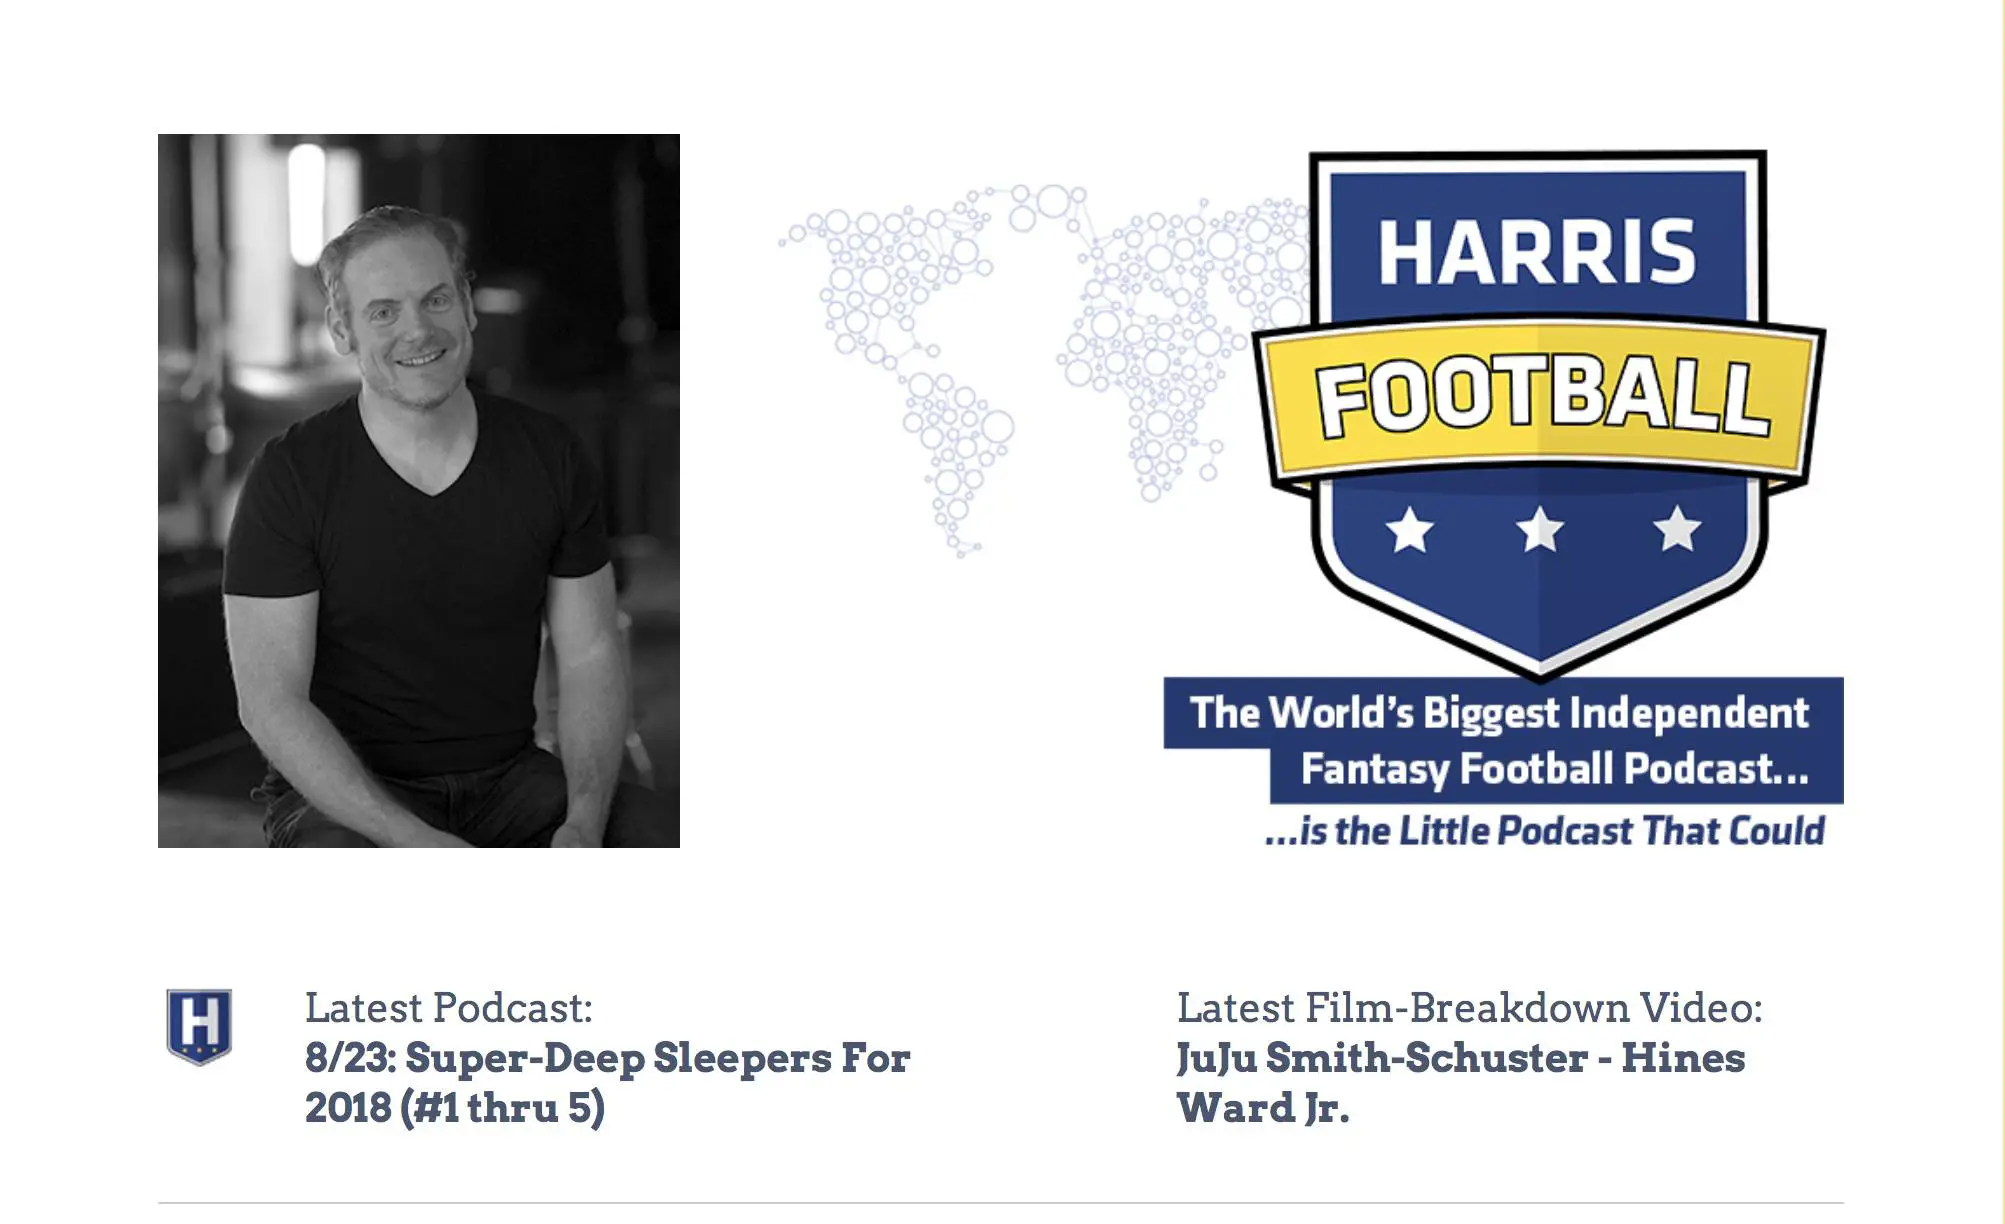 Captura de tela do site de podcast de futebol fantástico de Chris Harris.